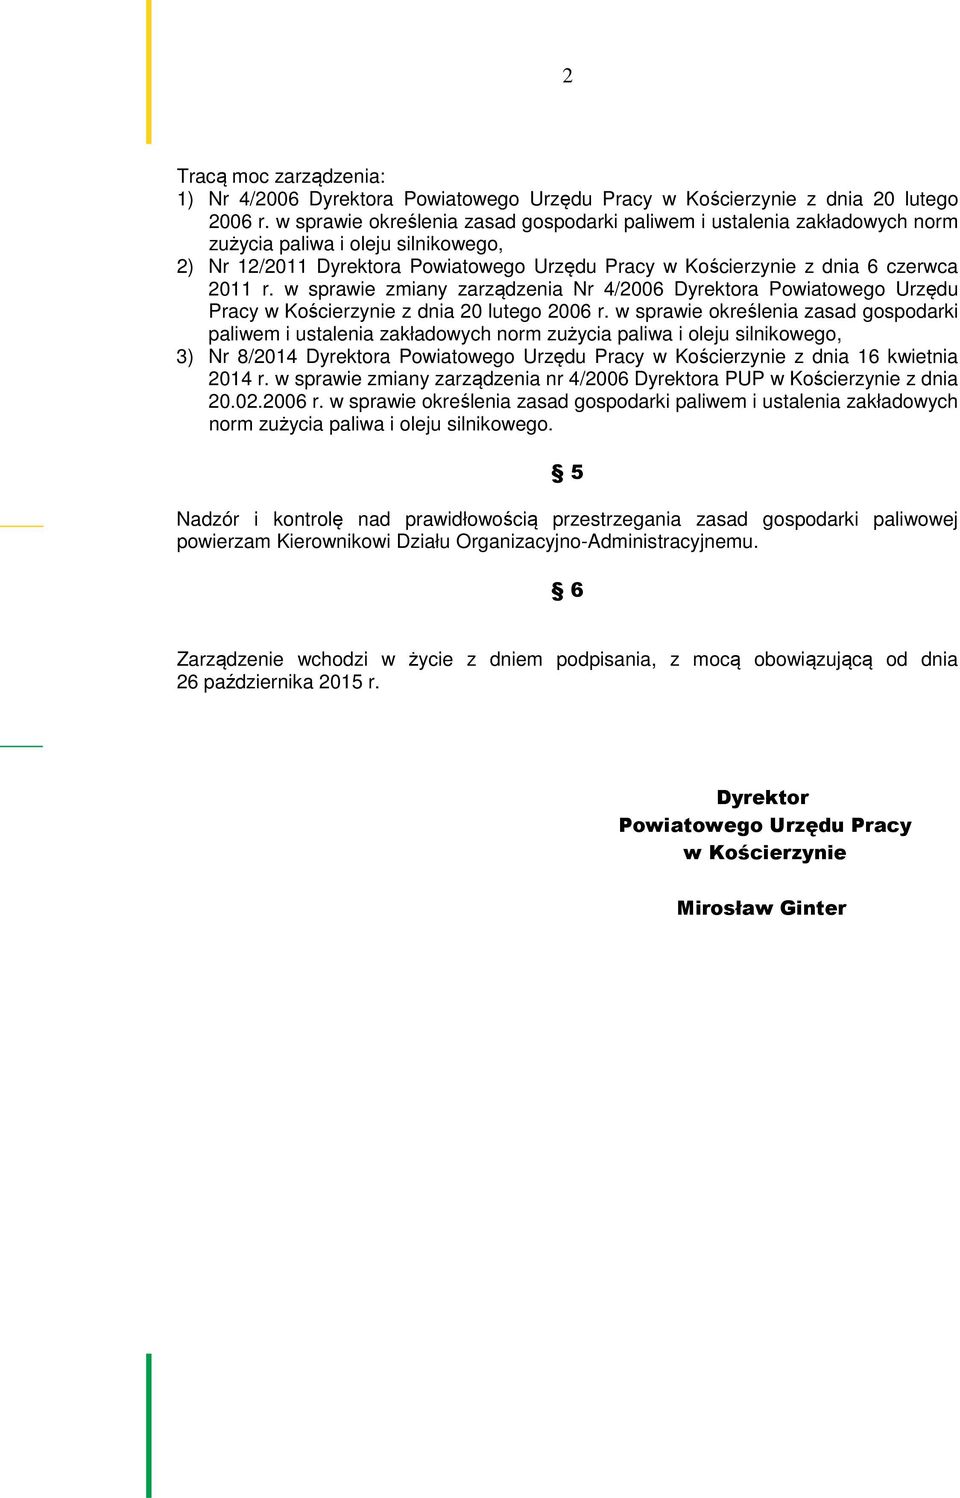 w sprawie zmiany zarządzenia Nr 4/2006 Dyrektora Powiatowego Urzędu Pracy w Kościerzynie z dnia 20 lutego 2006 r.